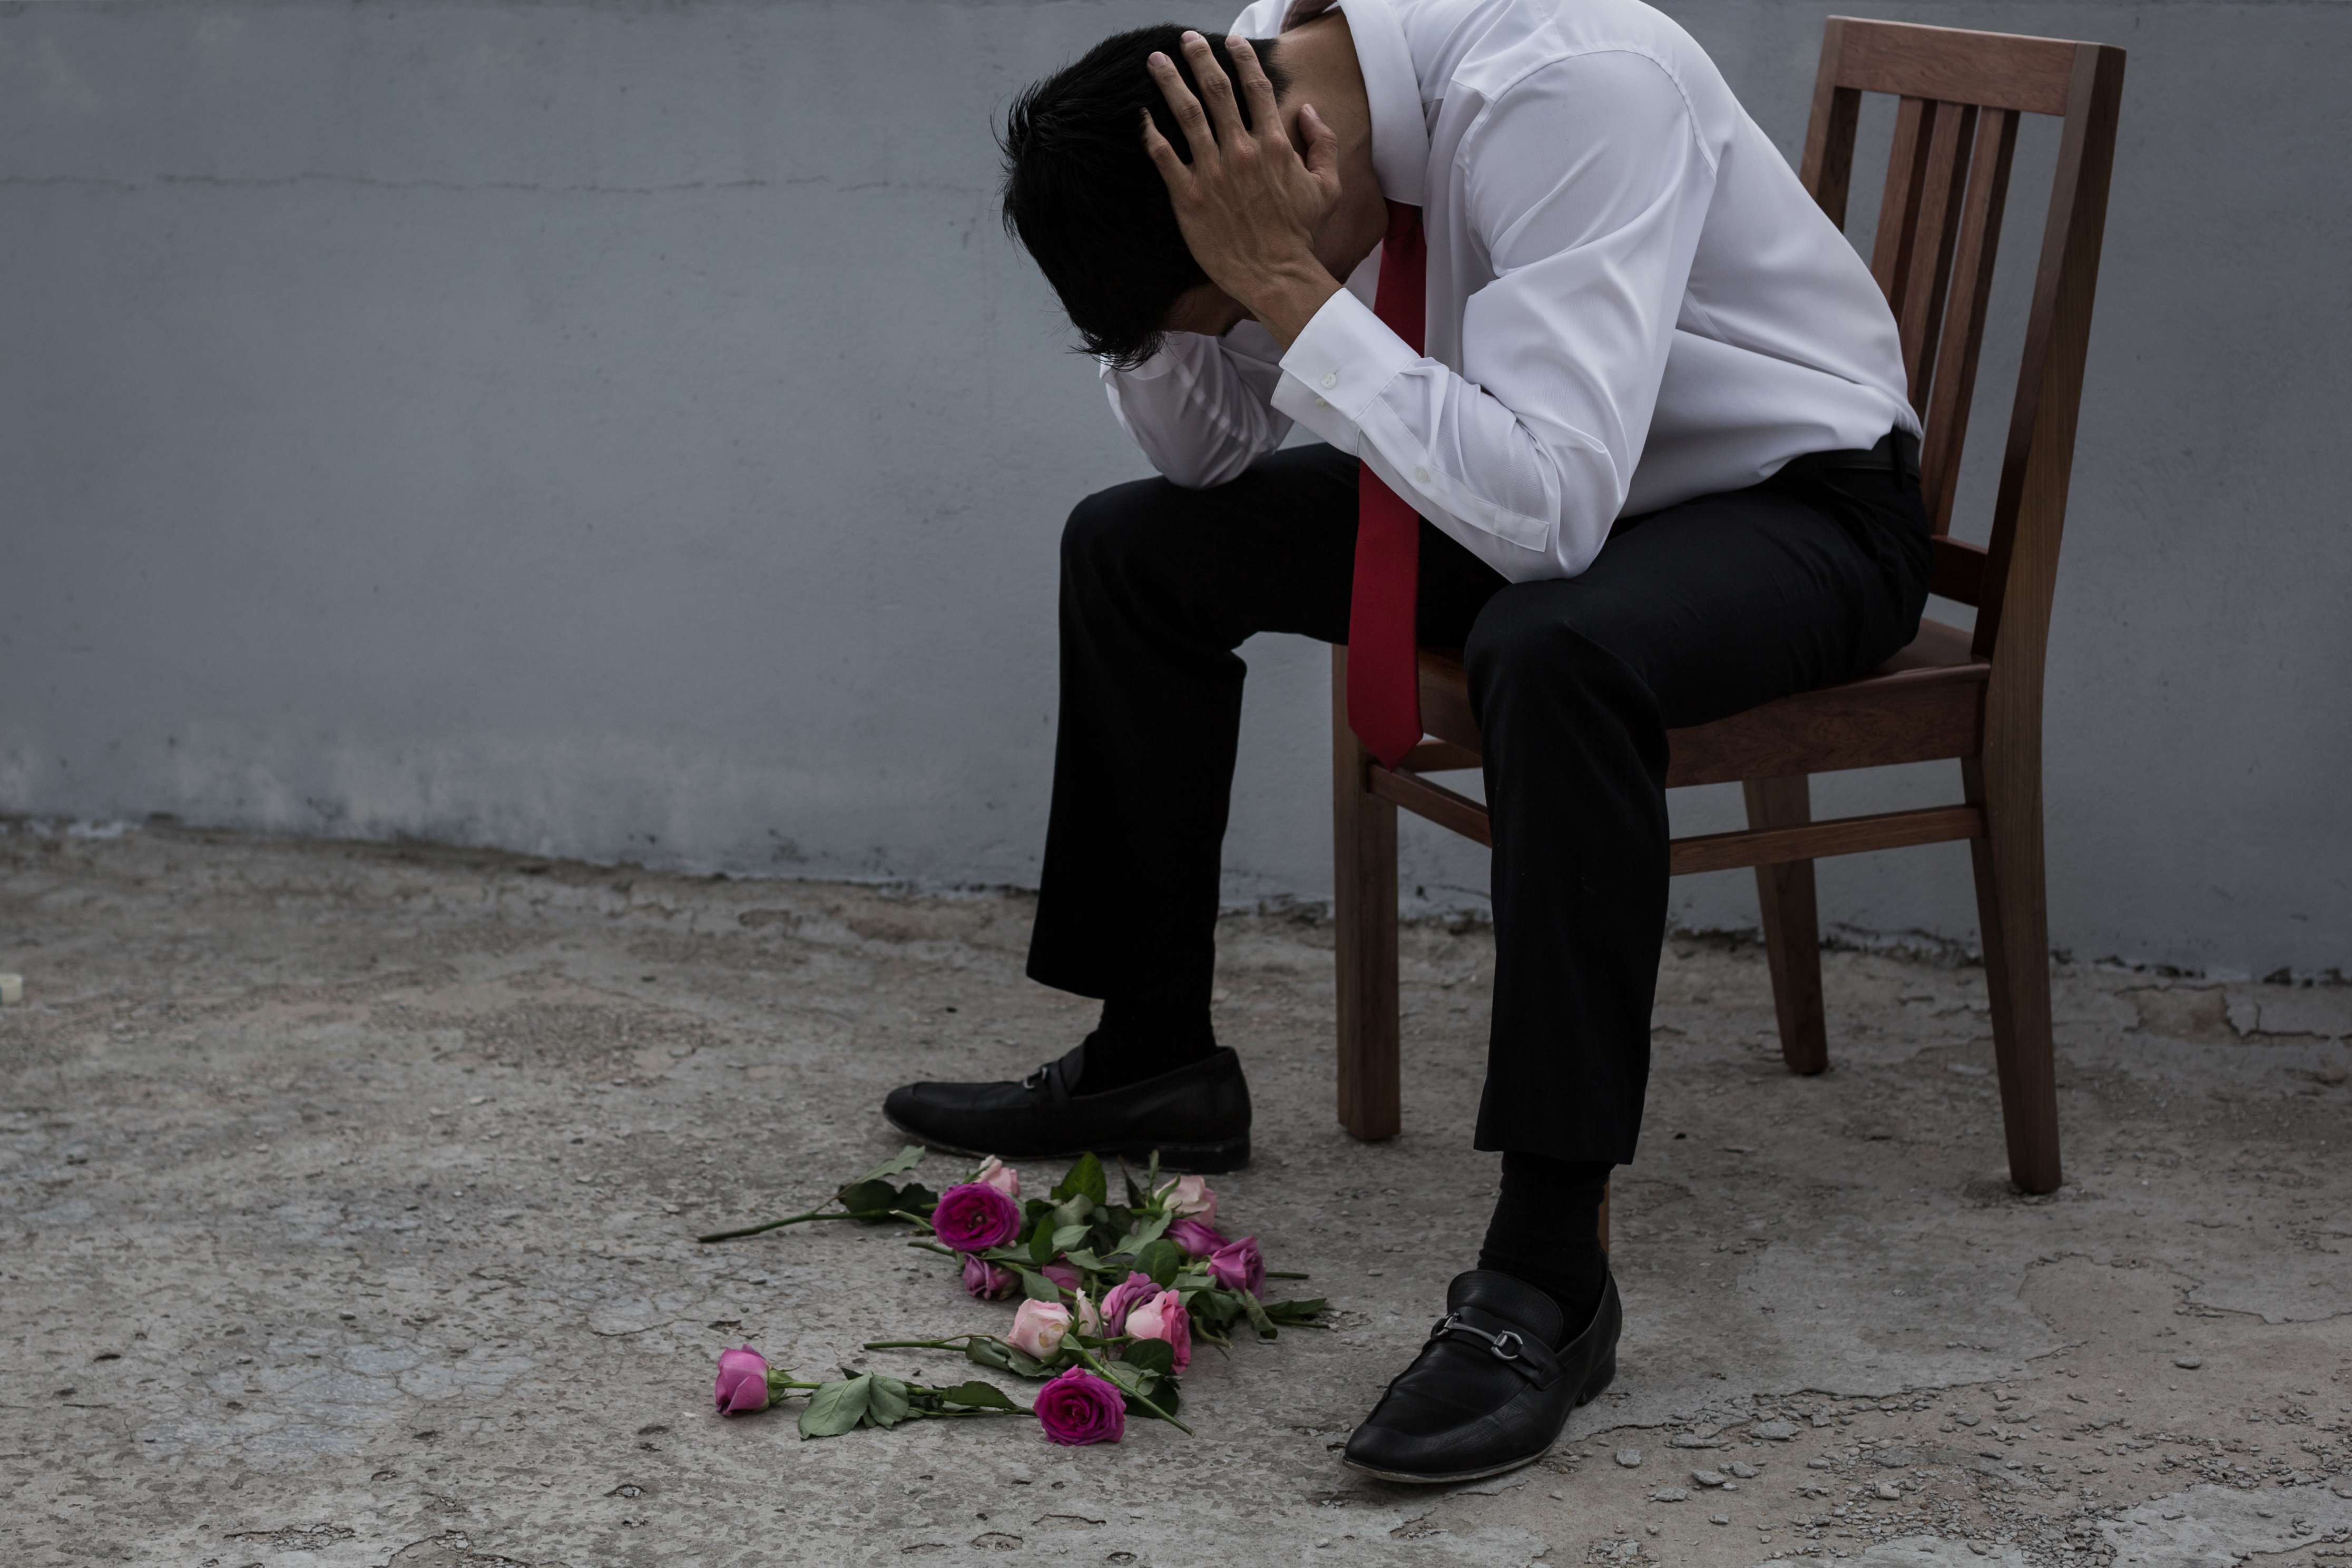 Un homme à l'air triste avec des fleurs éparpillées sur le sol | Source : Shutterstock